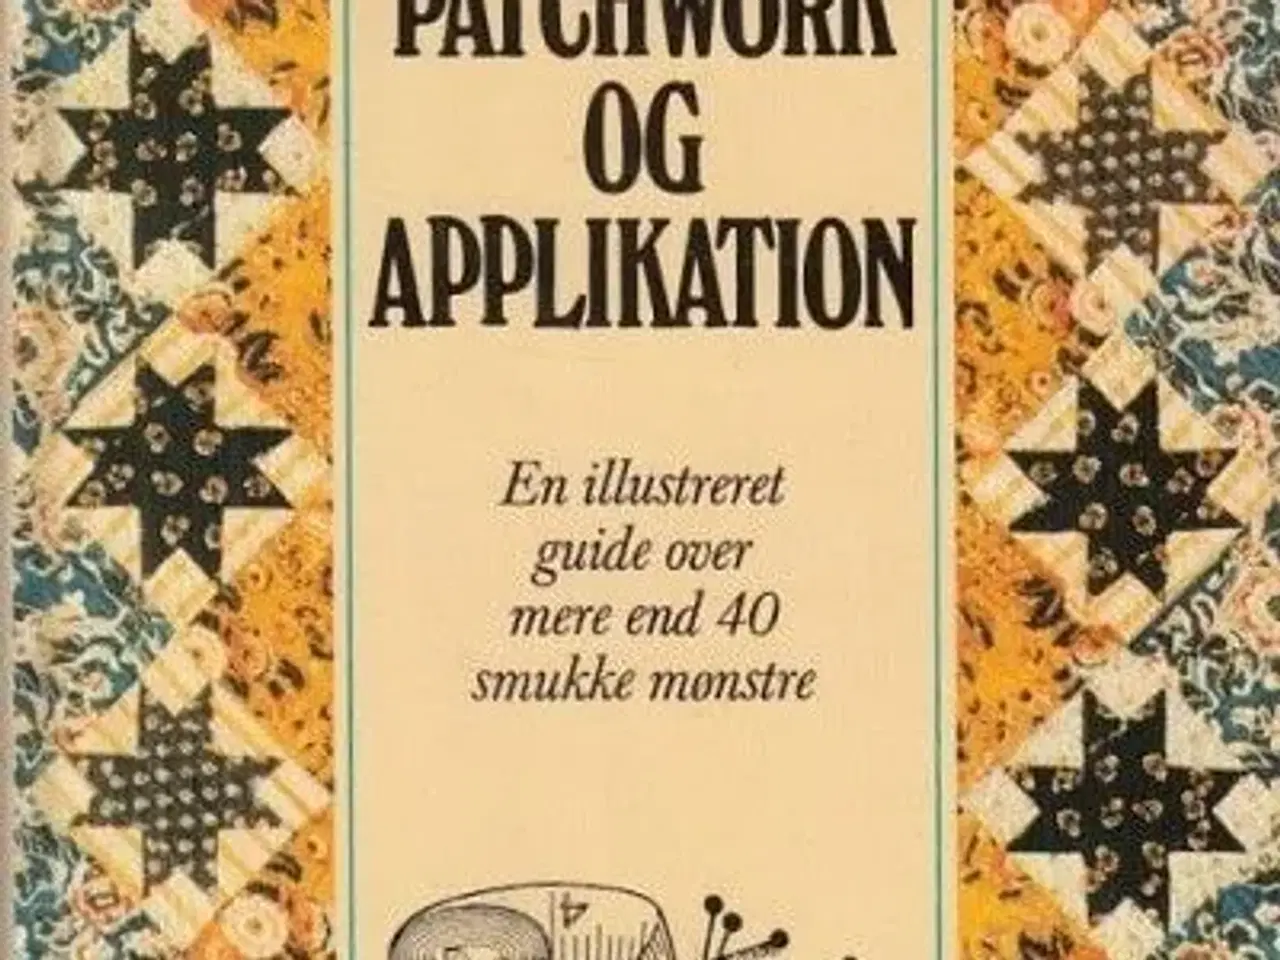 Billede 1 - bog om patchwork